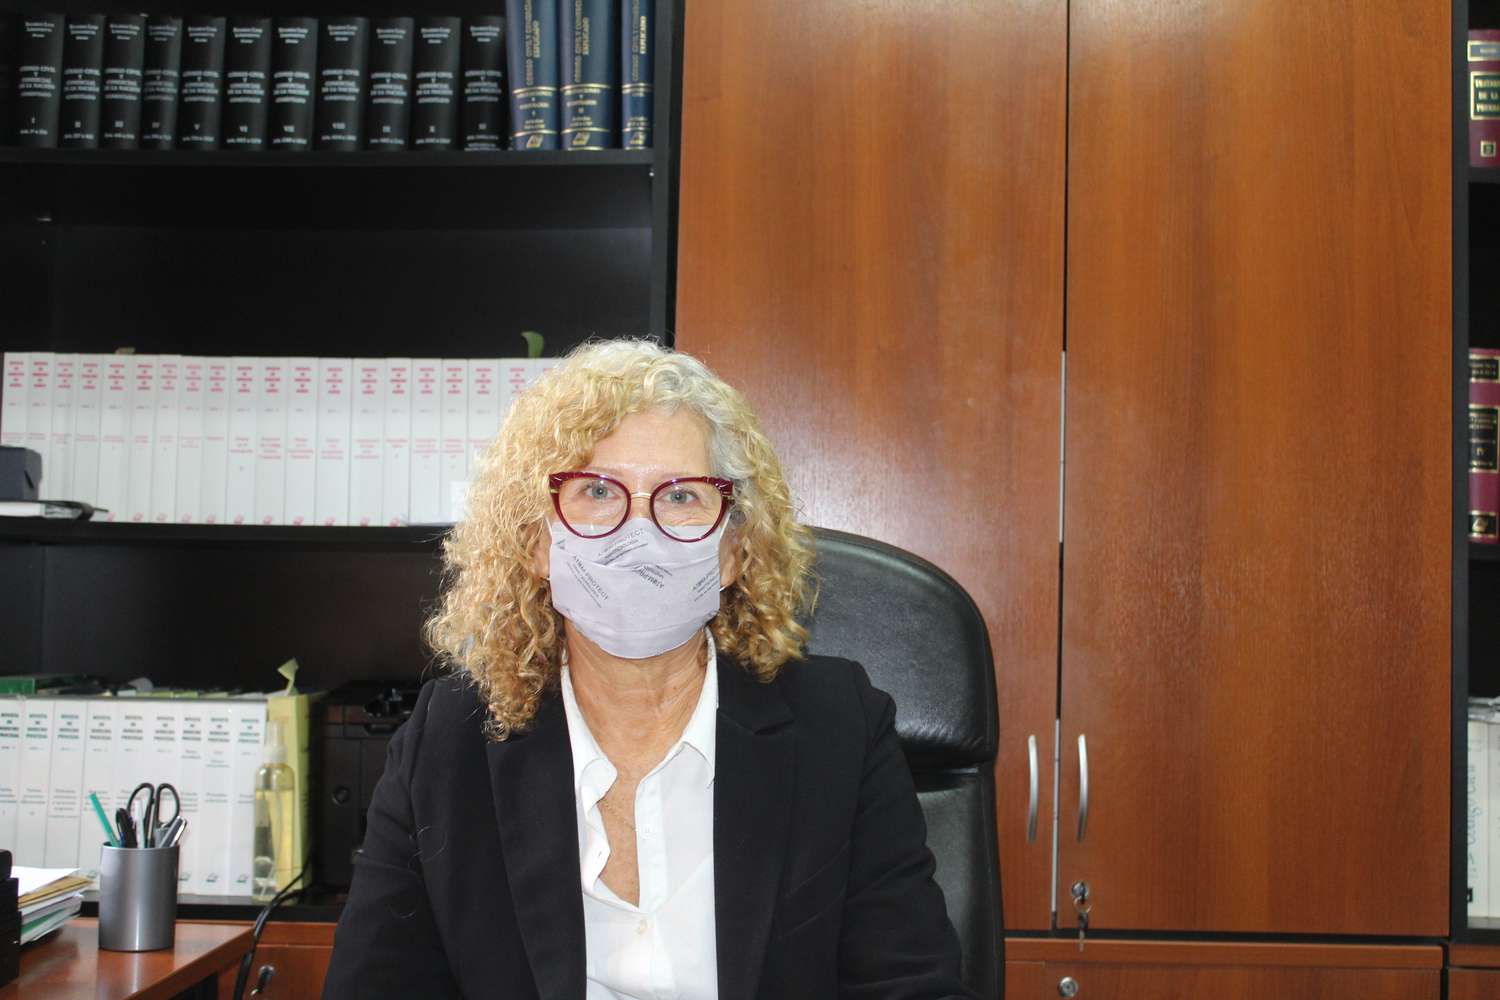 Dra. Teresita Ferreyra: "Por la pandemia debimos rápidamente adecuarnos para poder seguir brindando servicio de justicia"